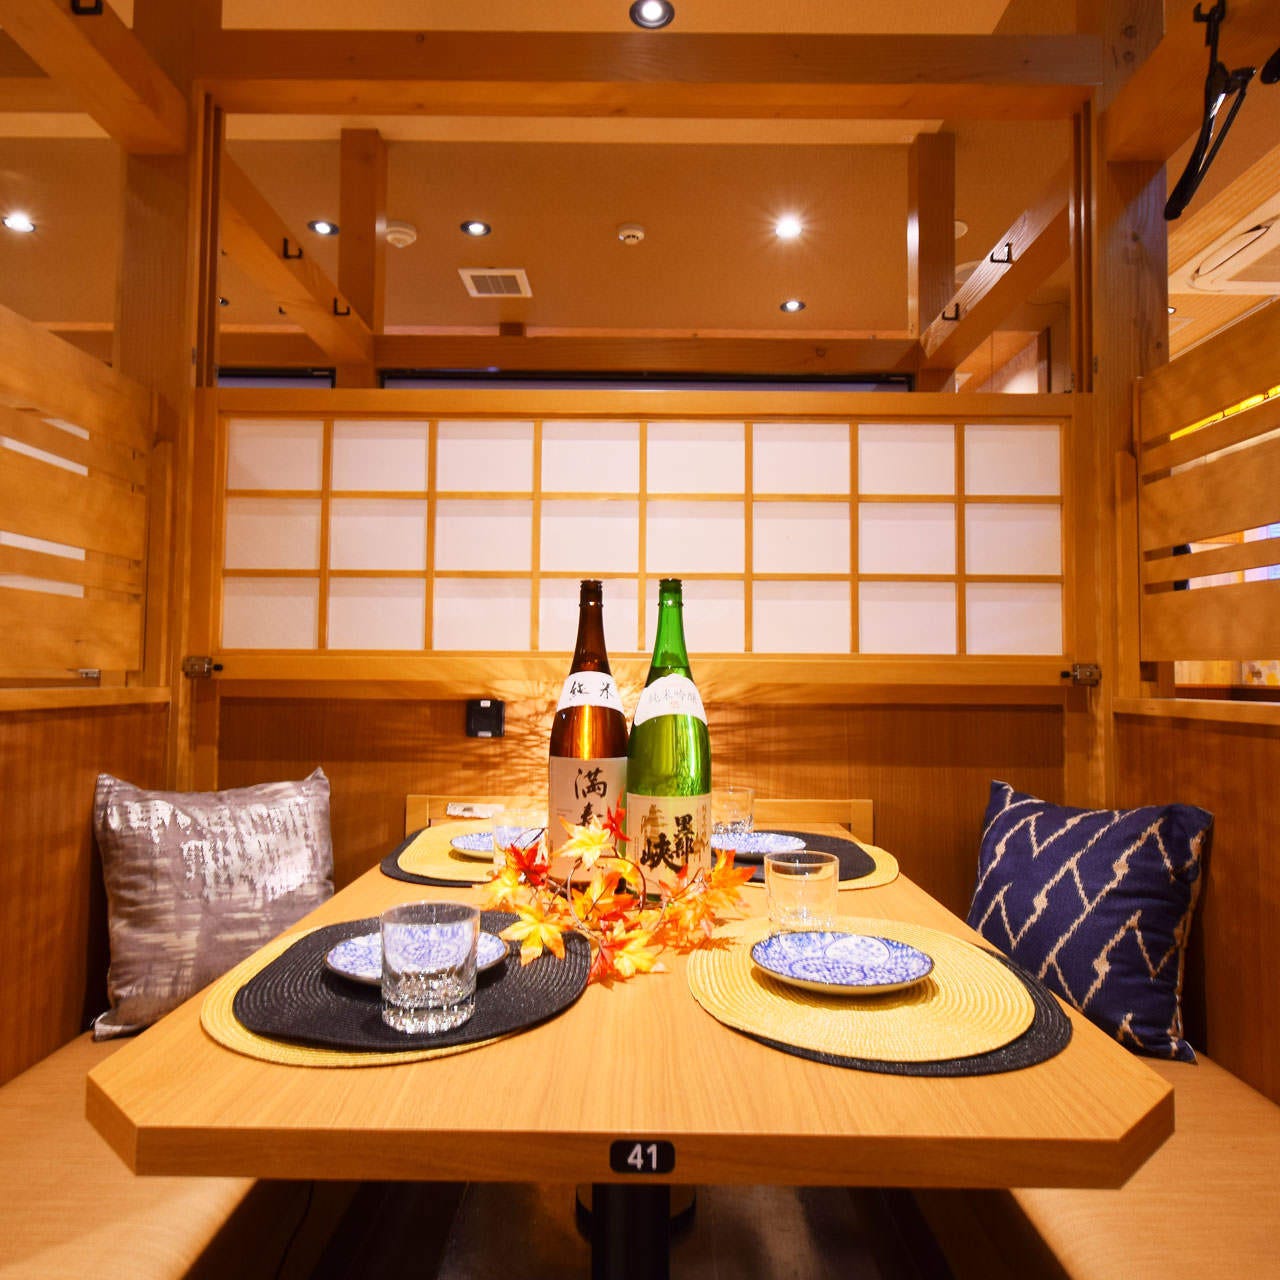 【富山駅×居酒屋】
宴会用の個室完備！大人の空間です…。